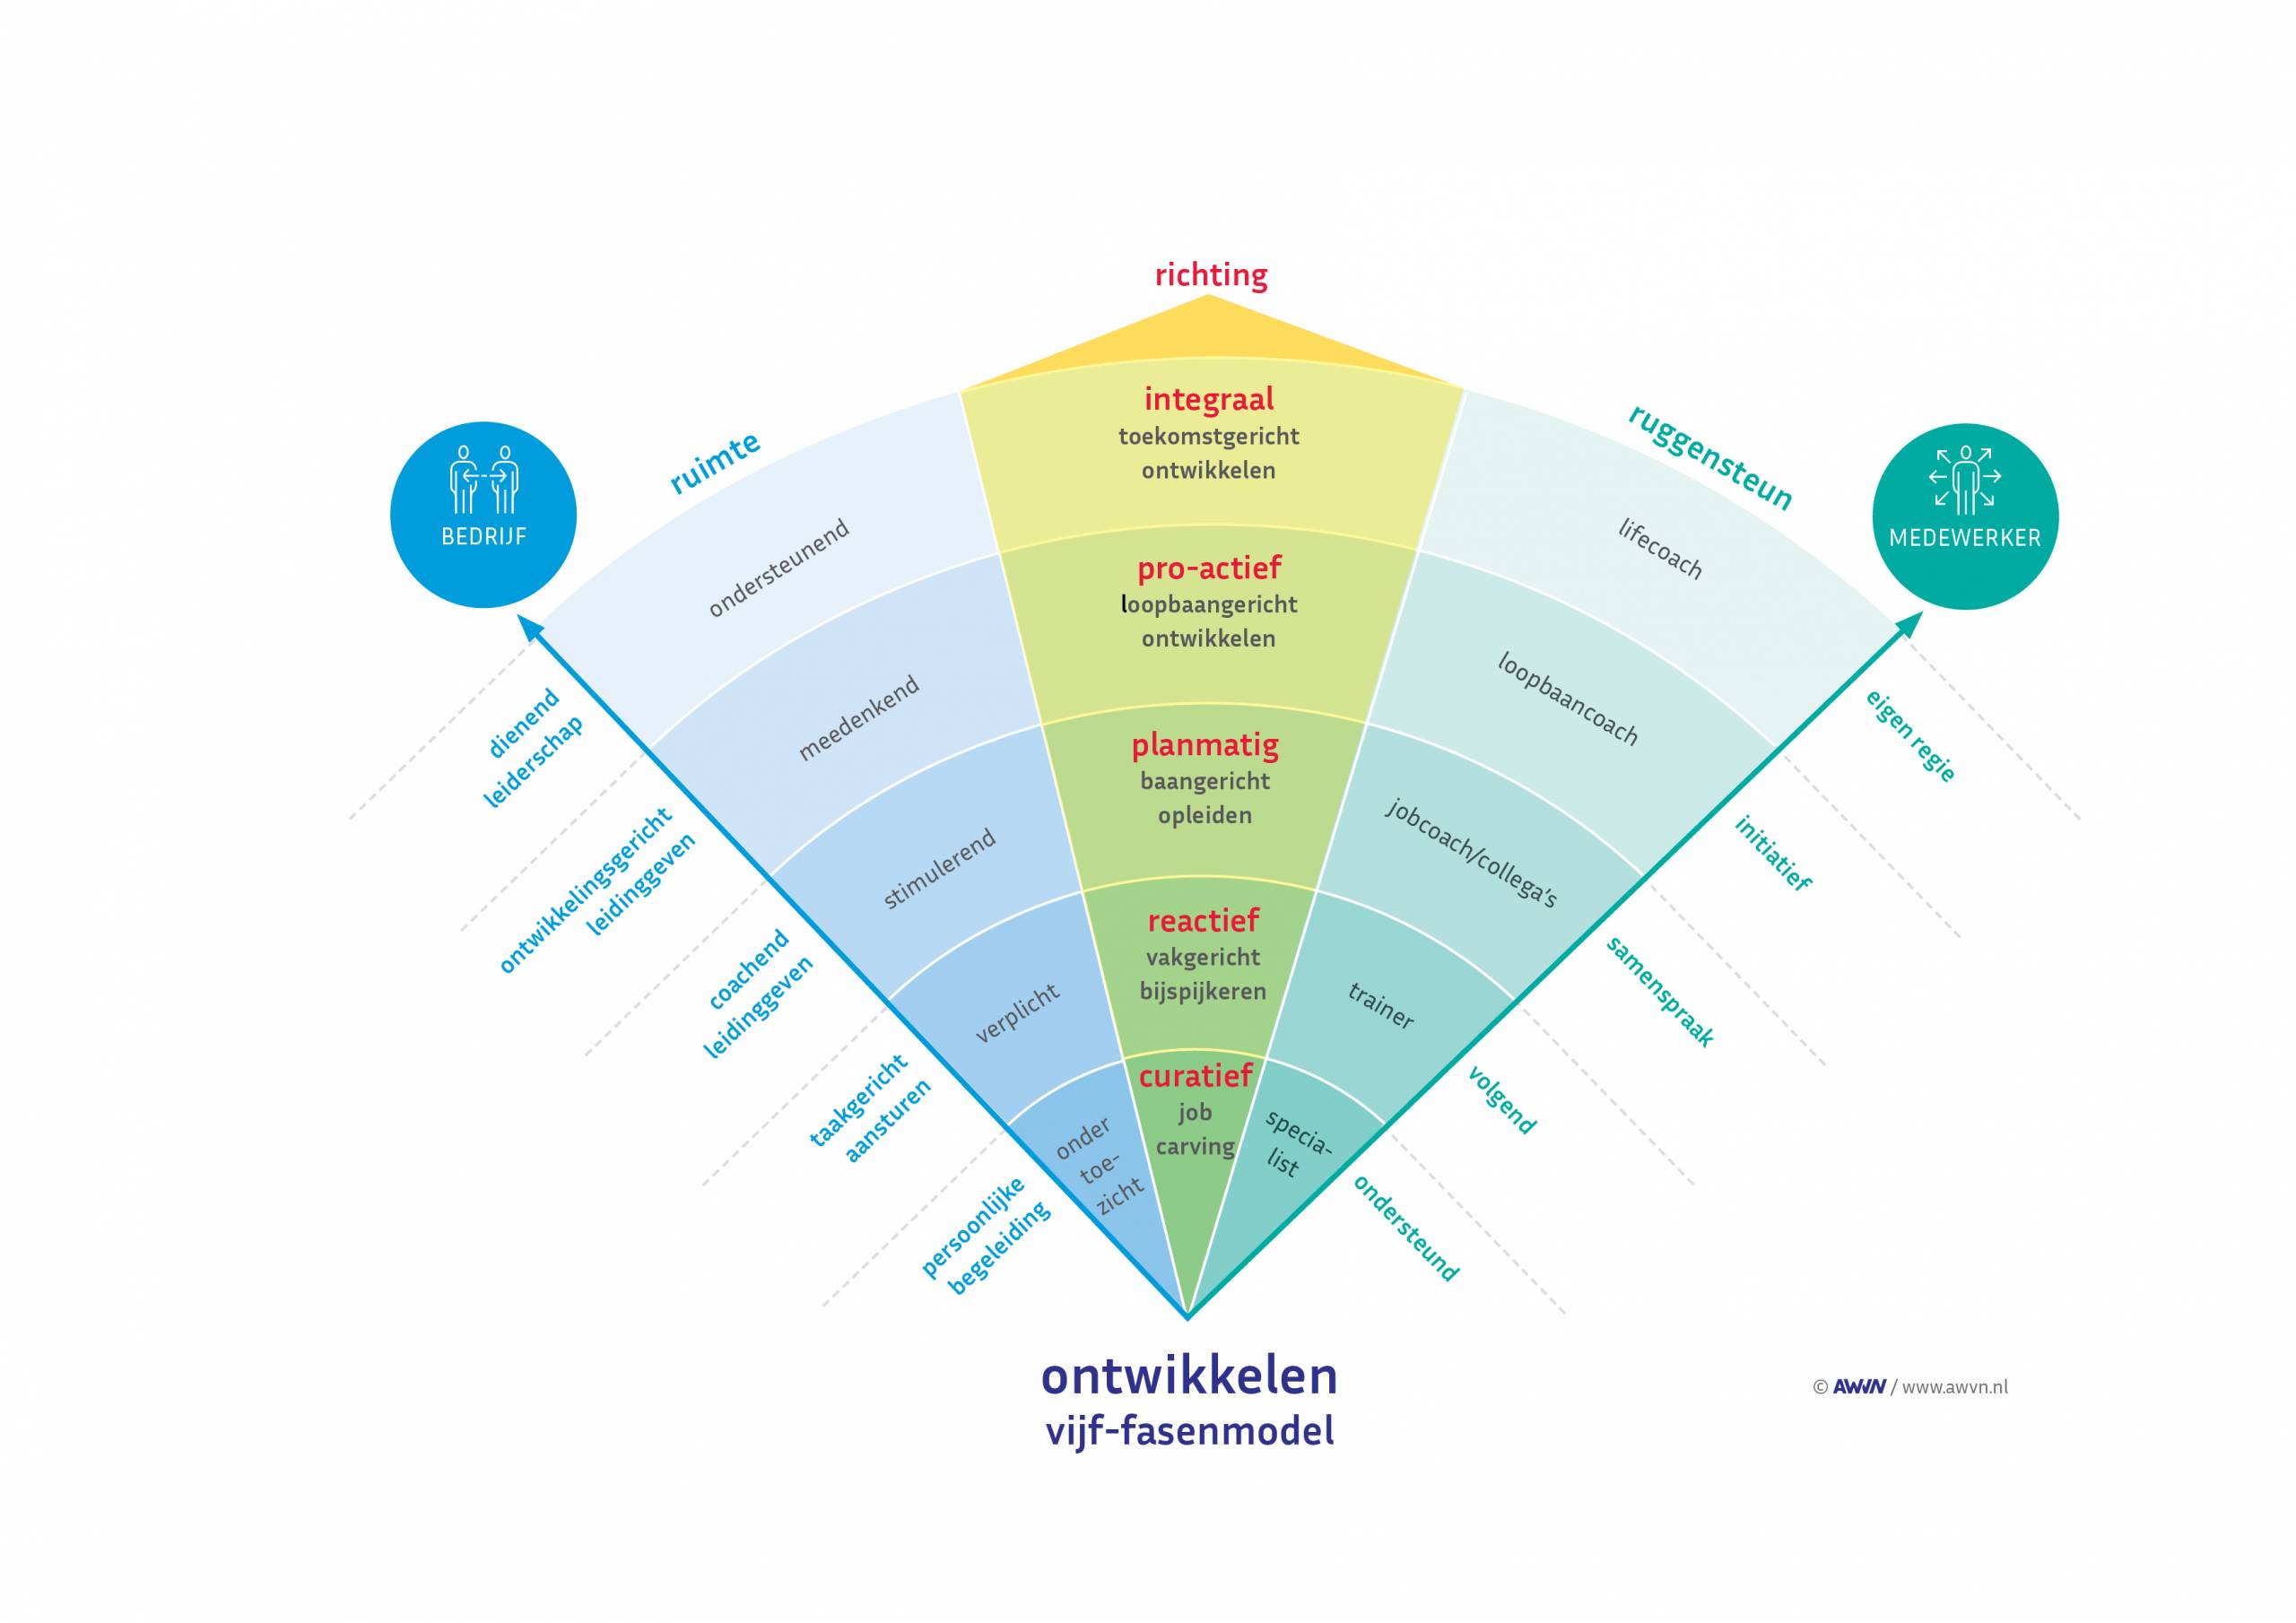 vijf-fasenmodel leercultuur organisatie